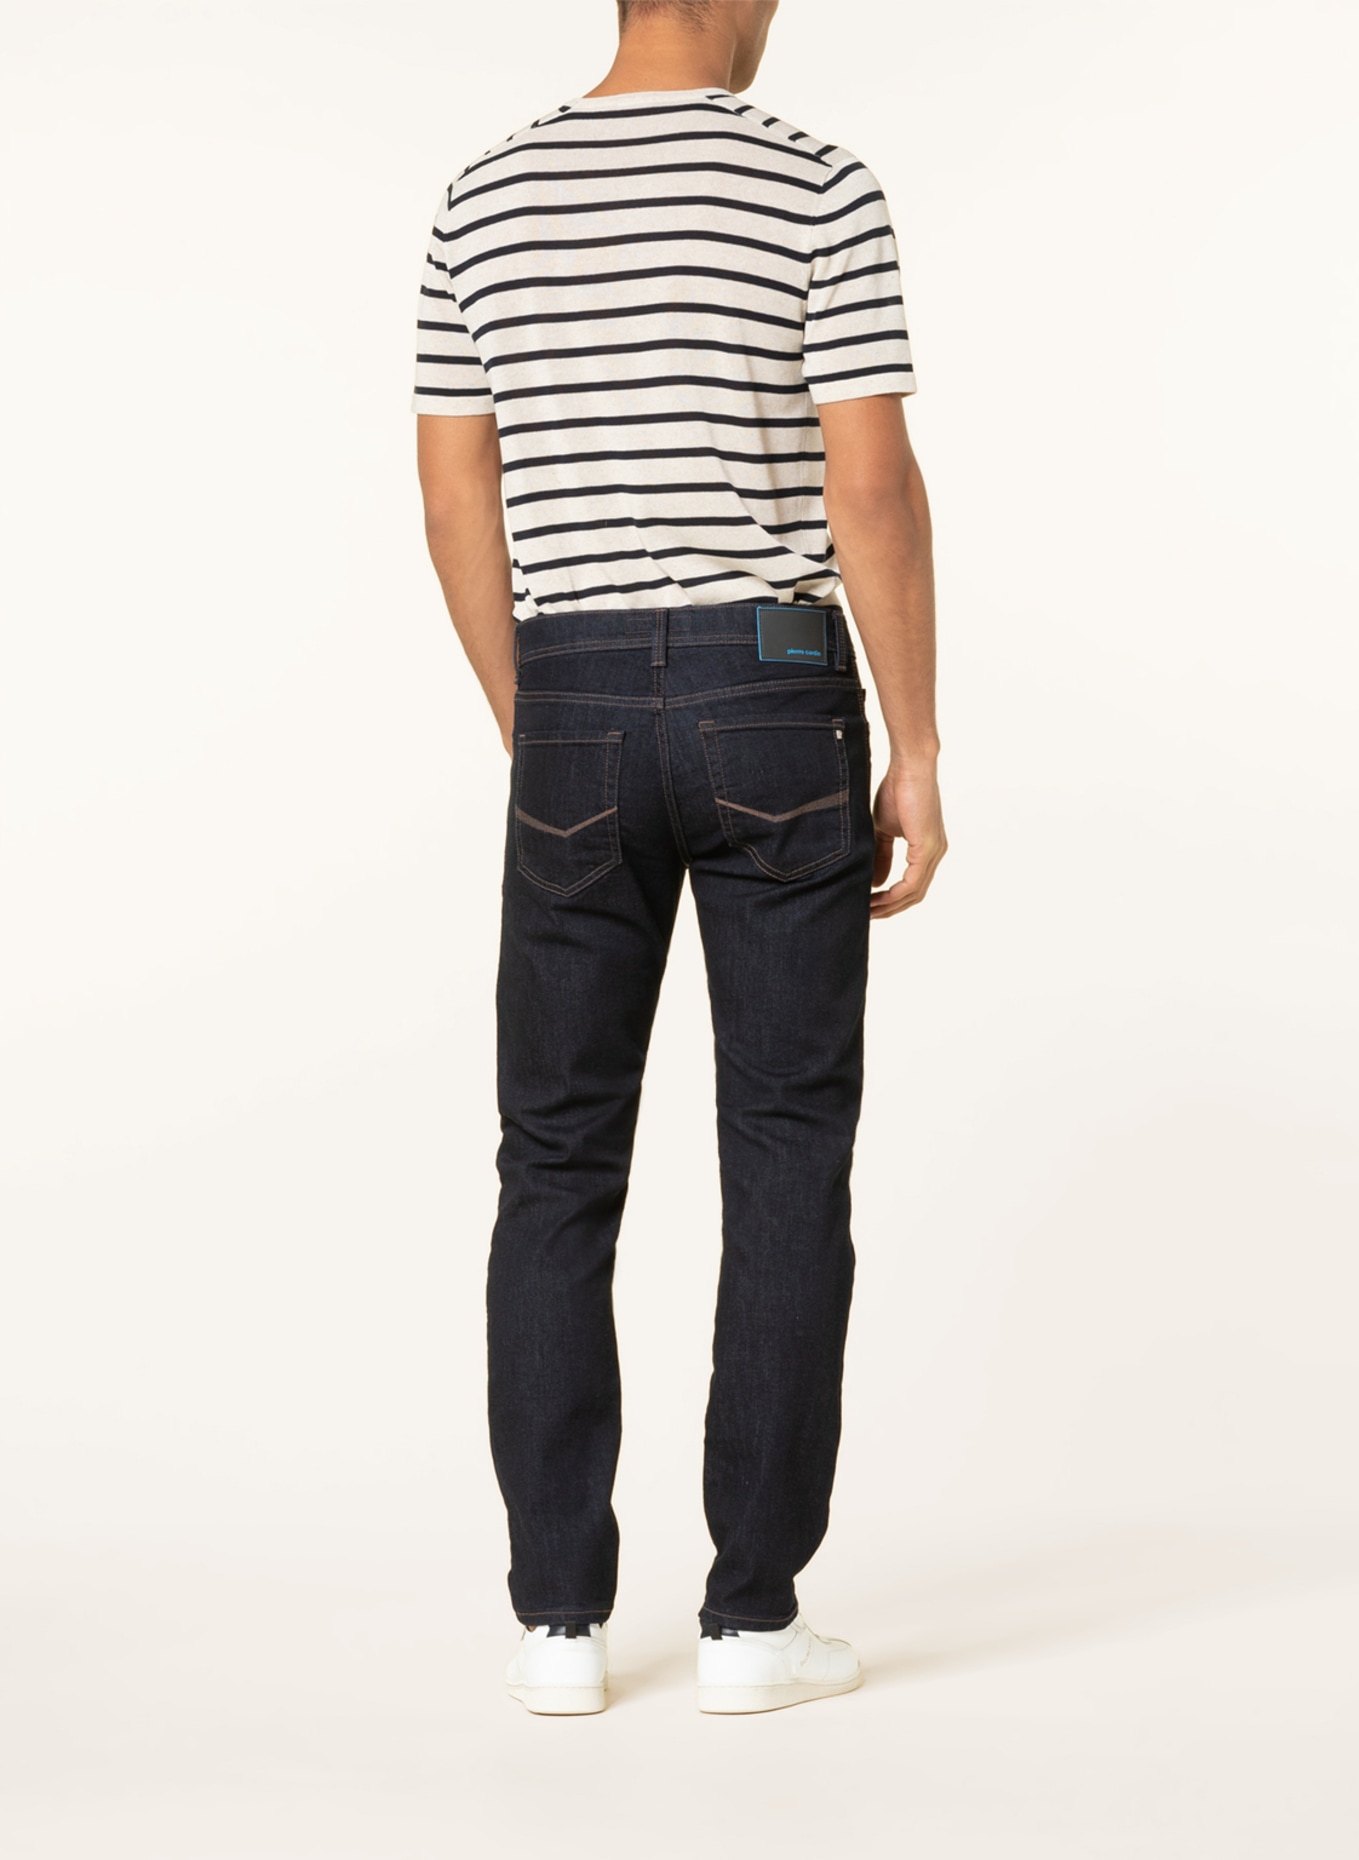 pierre cardin Jeans LYON FUTURE FLEX tapered fit, Color: 6801 blue/black stonewash (Image 3)